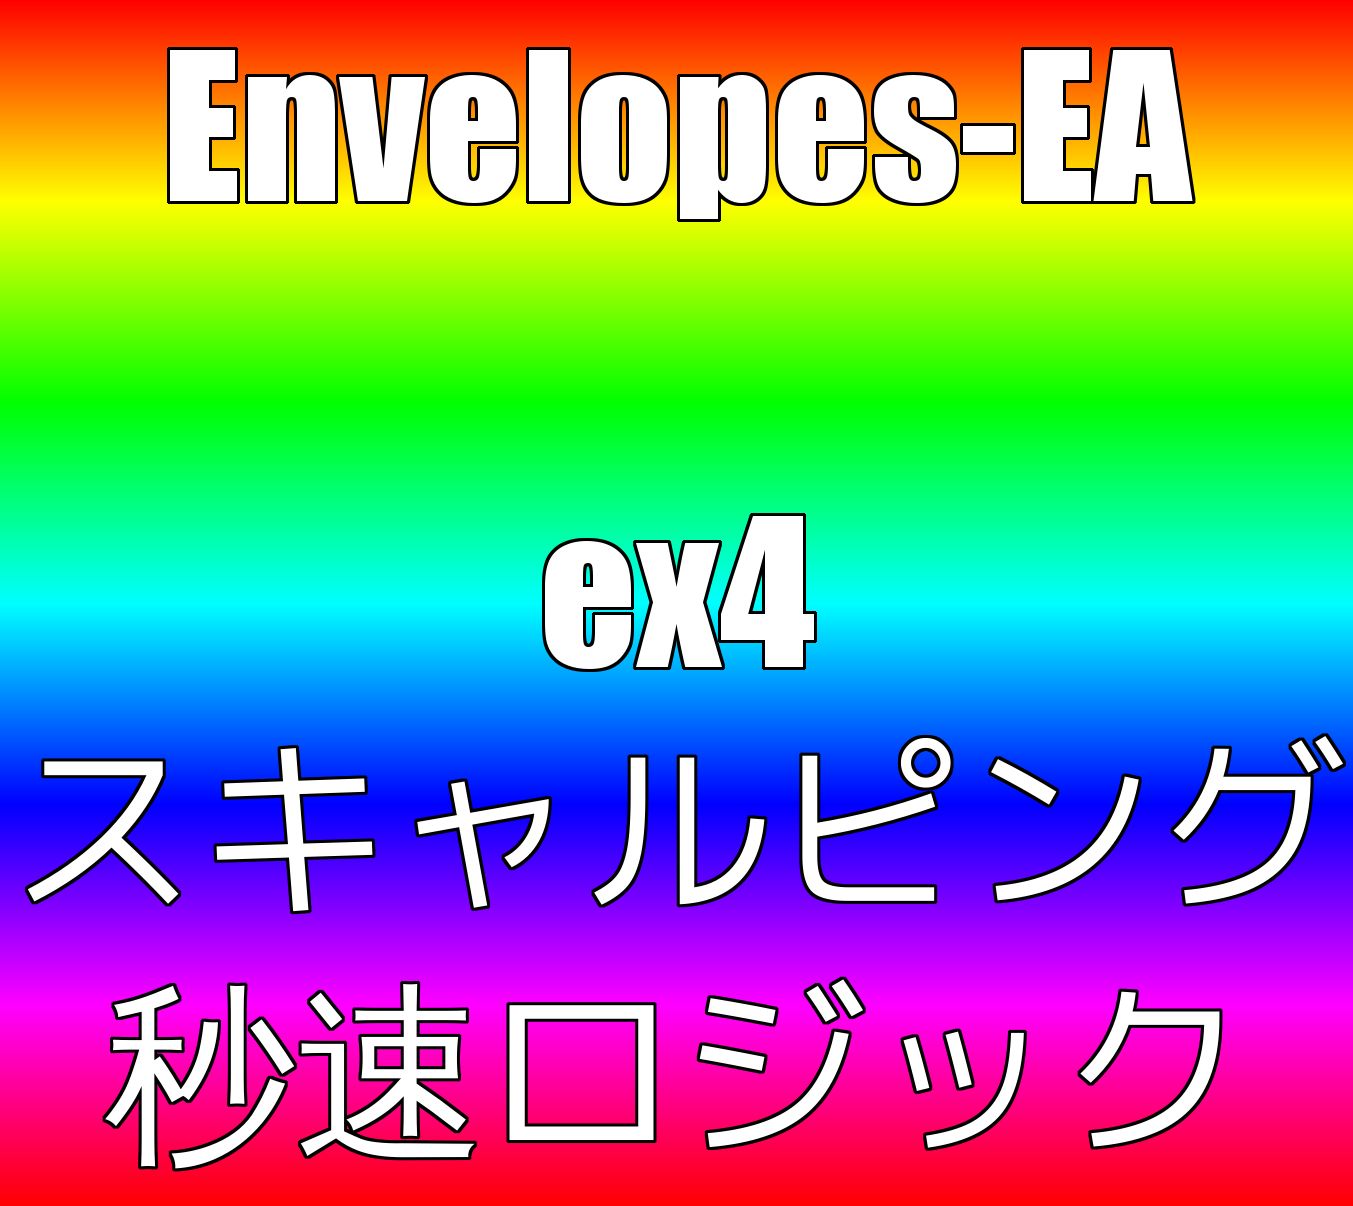 ENVELOPES-EA 自動売買